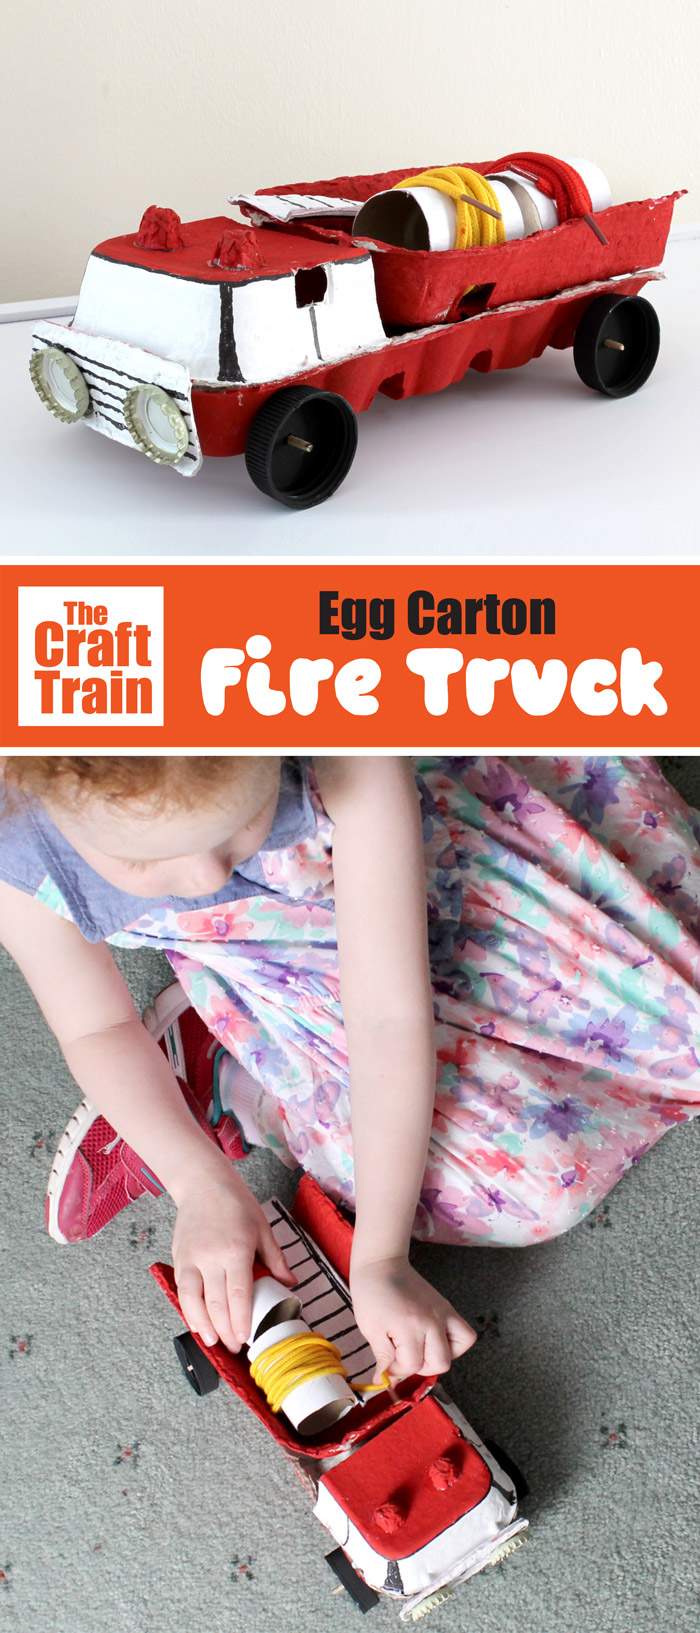 Egg carton fire truck craft for kids